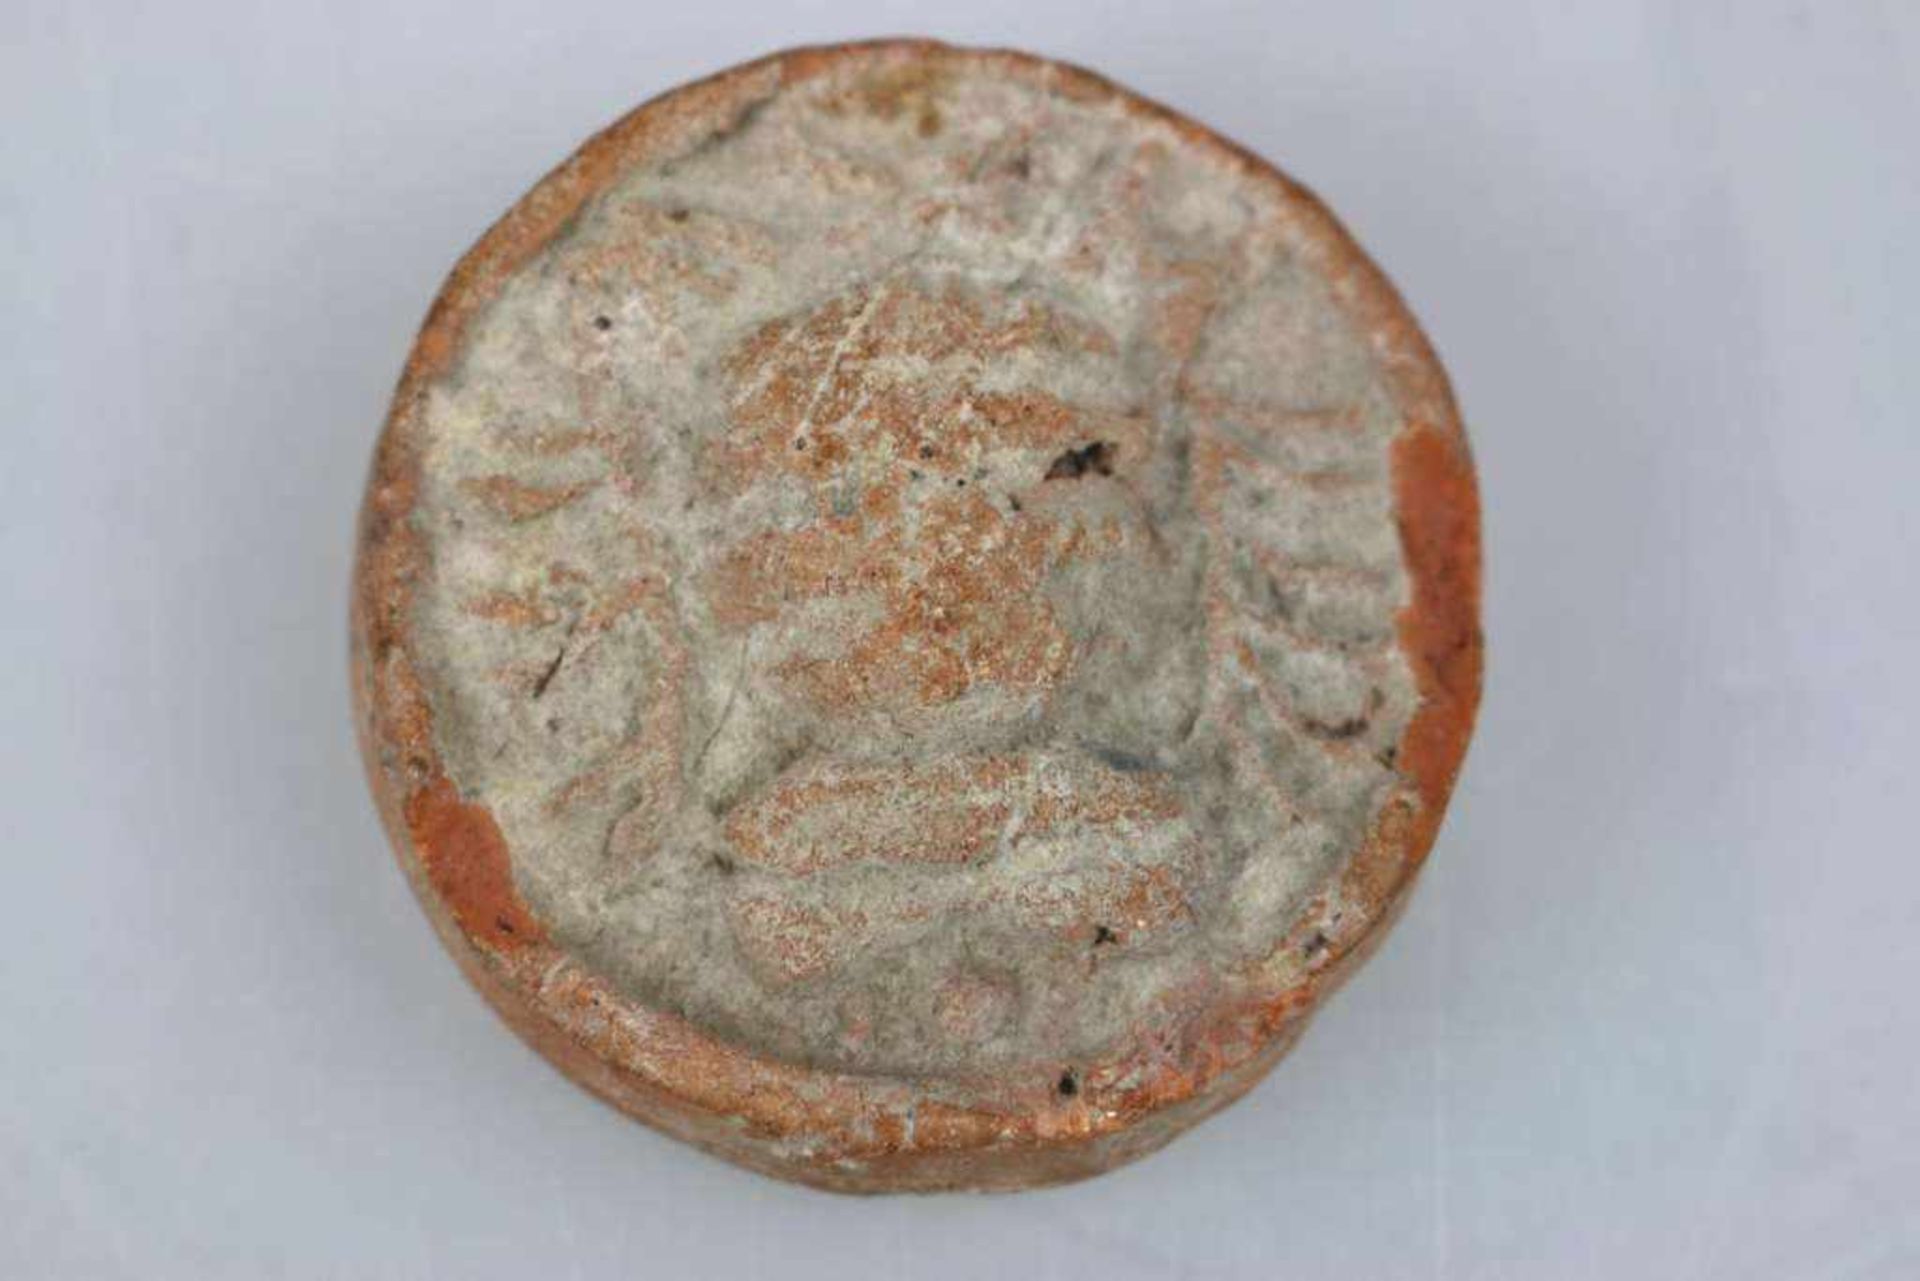 Siegel mit "GR", spätrömische Brotmarke oder auch Brot Siegel aus dem 3./4. Jh. n. Chr.. Sehr - Bild 2 aus 2